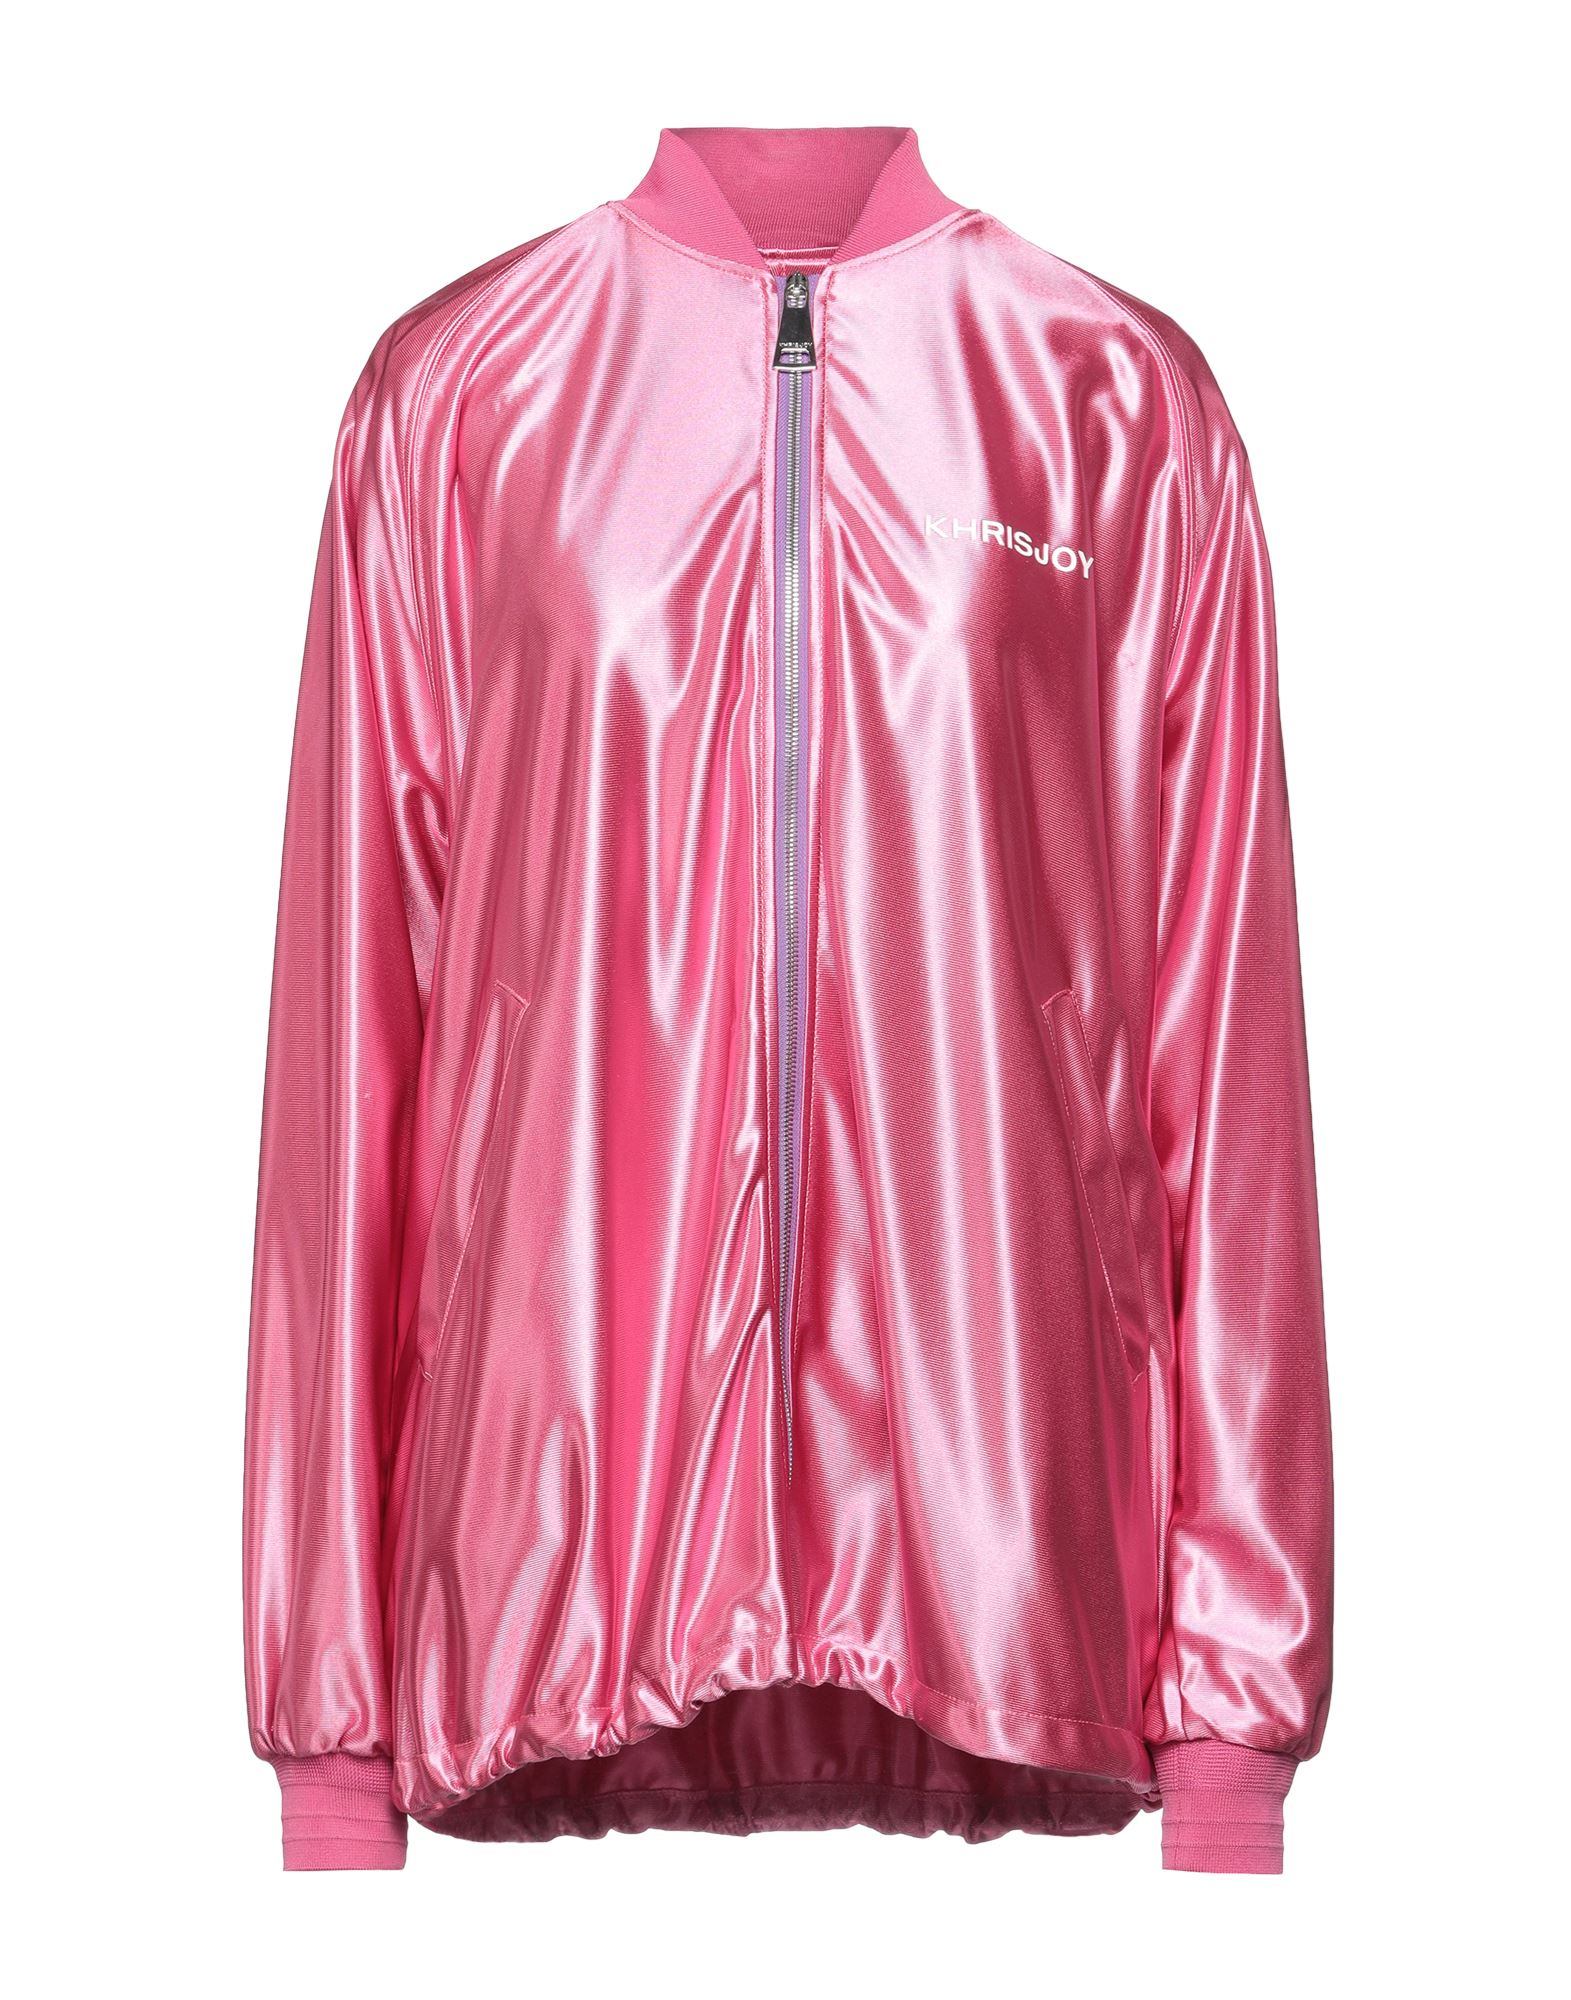 Shop Khrisjoy Woman Sweatshirt Pink Size 1 Polyester